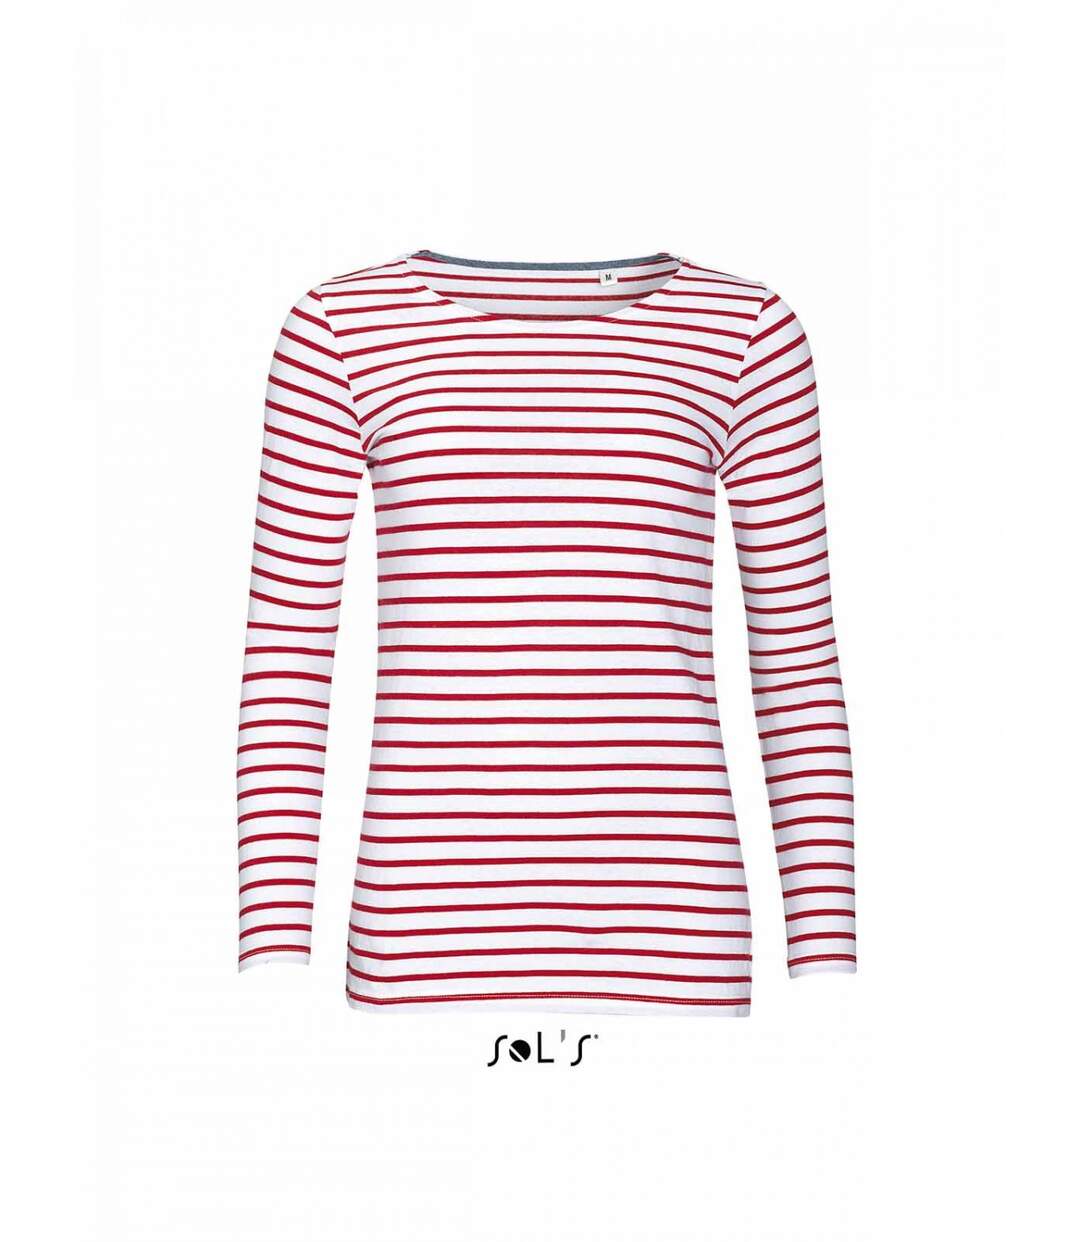 t-shirt rayé marinière femme - manches longues - 01403 - rouge